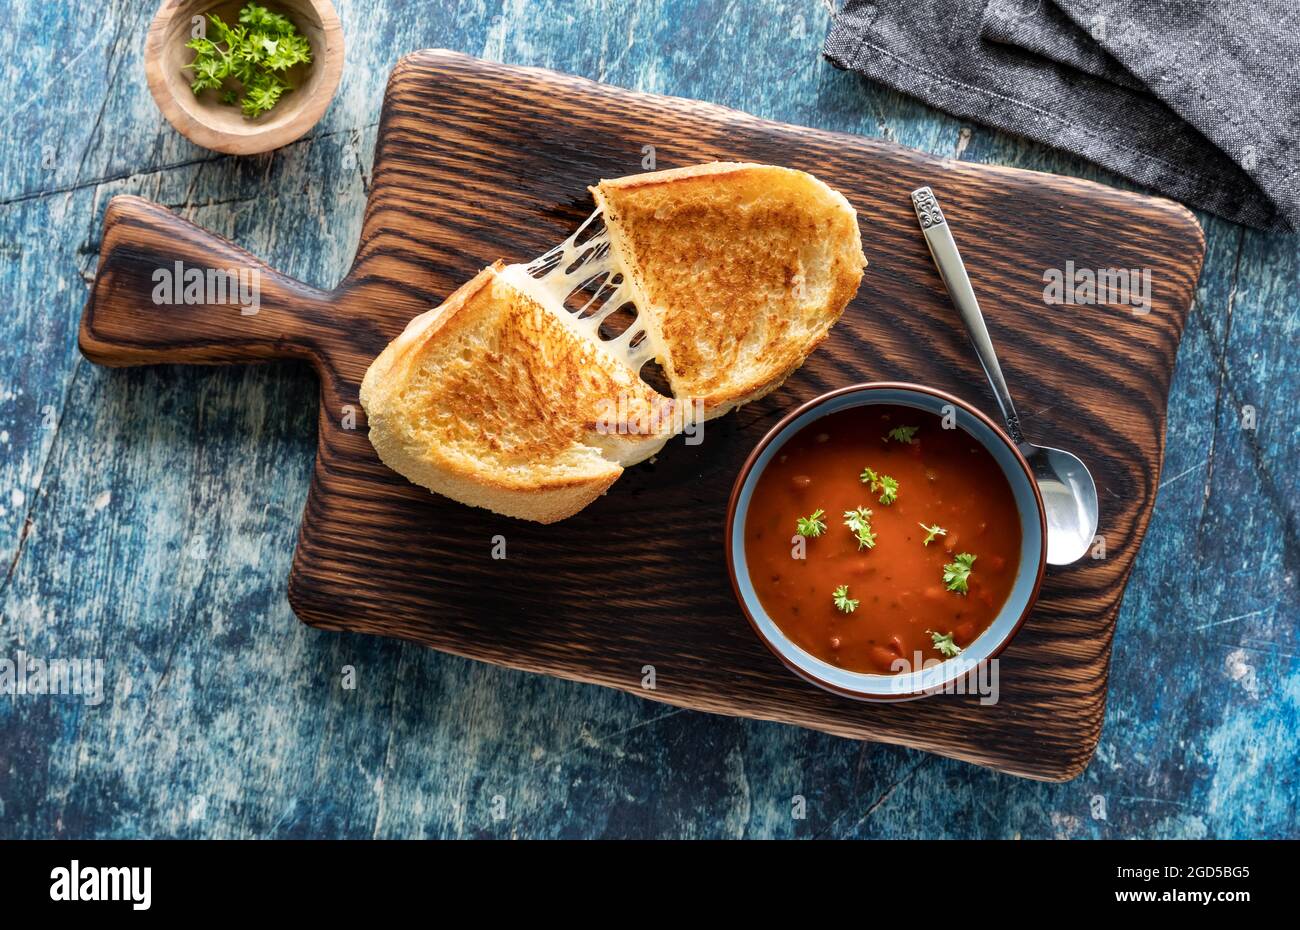 Vue de haut en bas d'un sandwich au fromage grillé avec soupe de tomates, prêt à manger. Banque D'Images